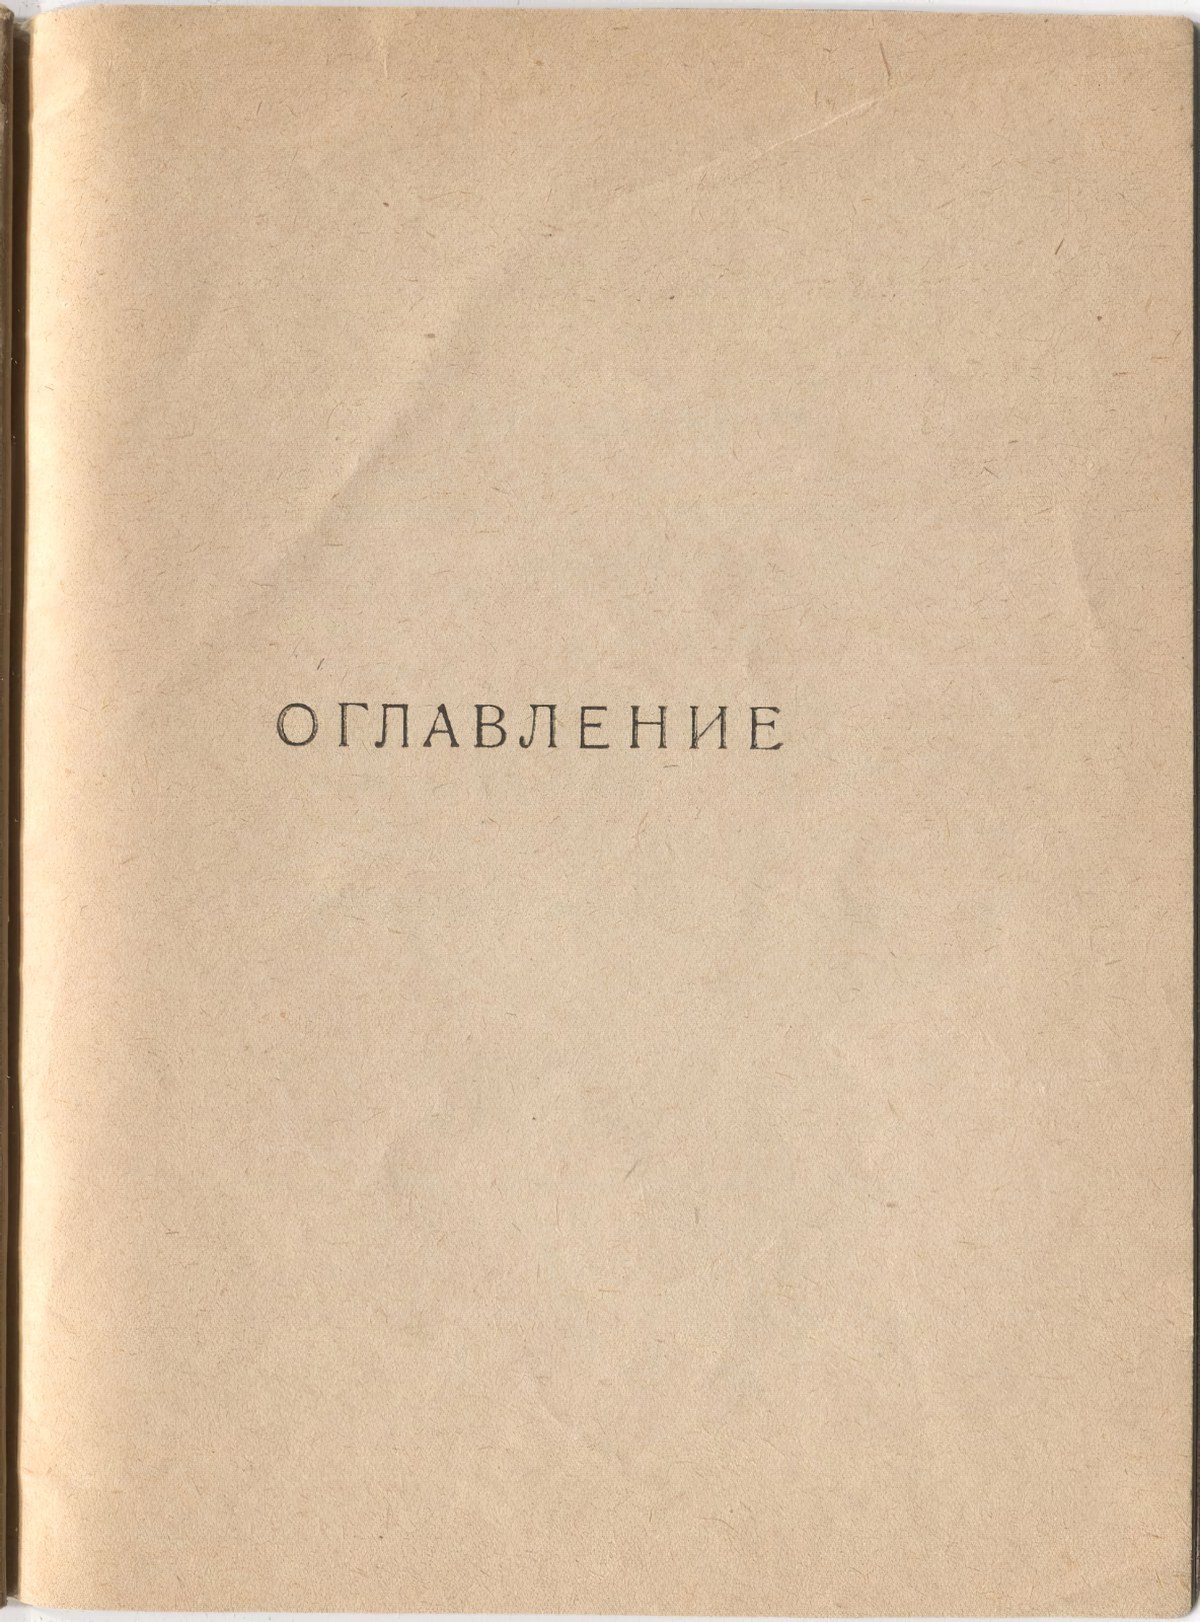 Шатёр (1921). Концевой титульный лист 1